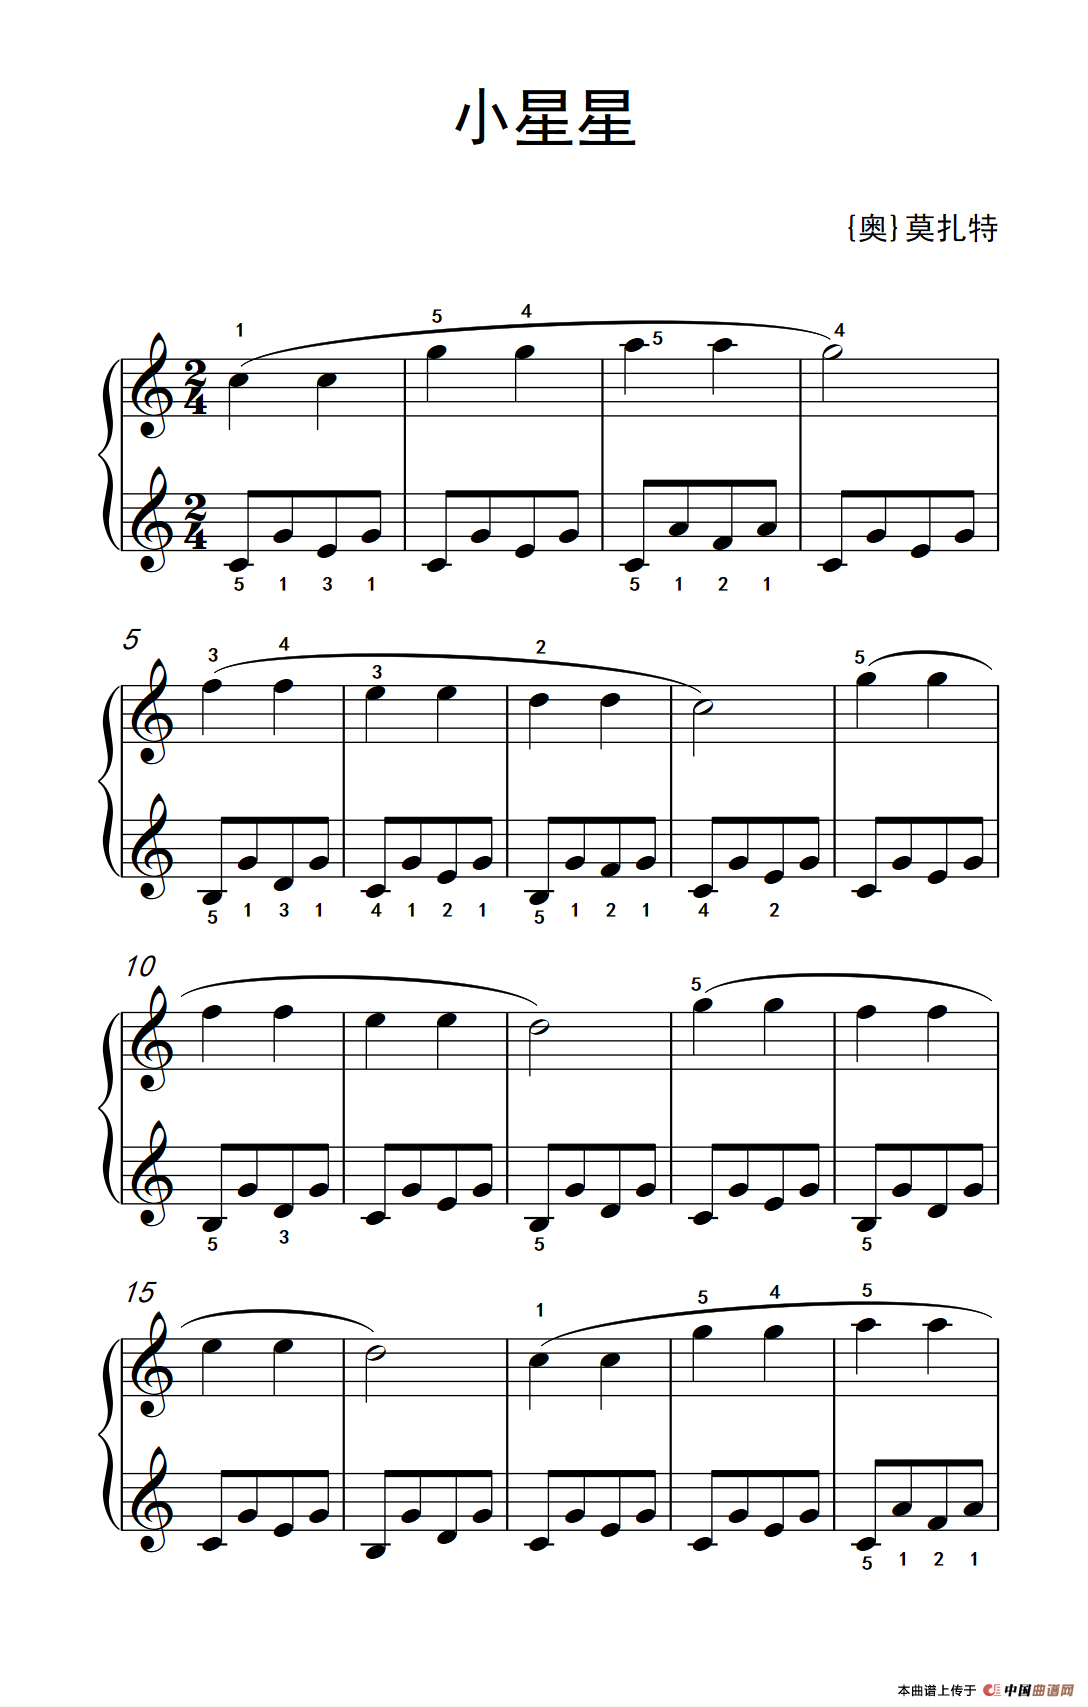 《小星星》钢琴曲谱图分享